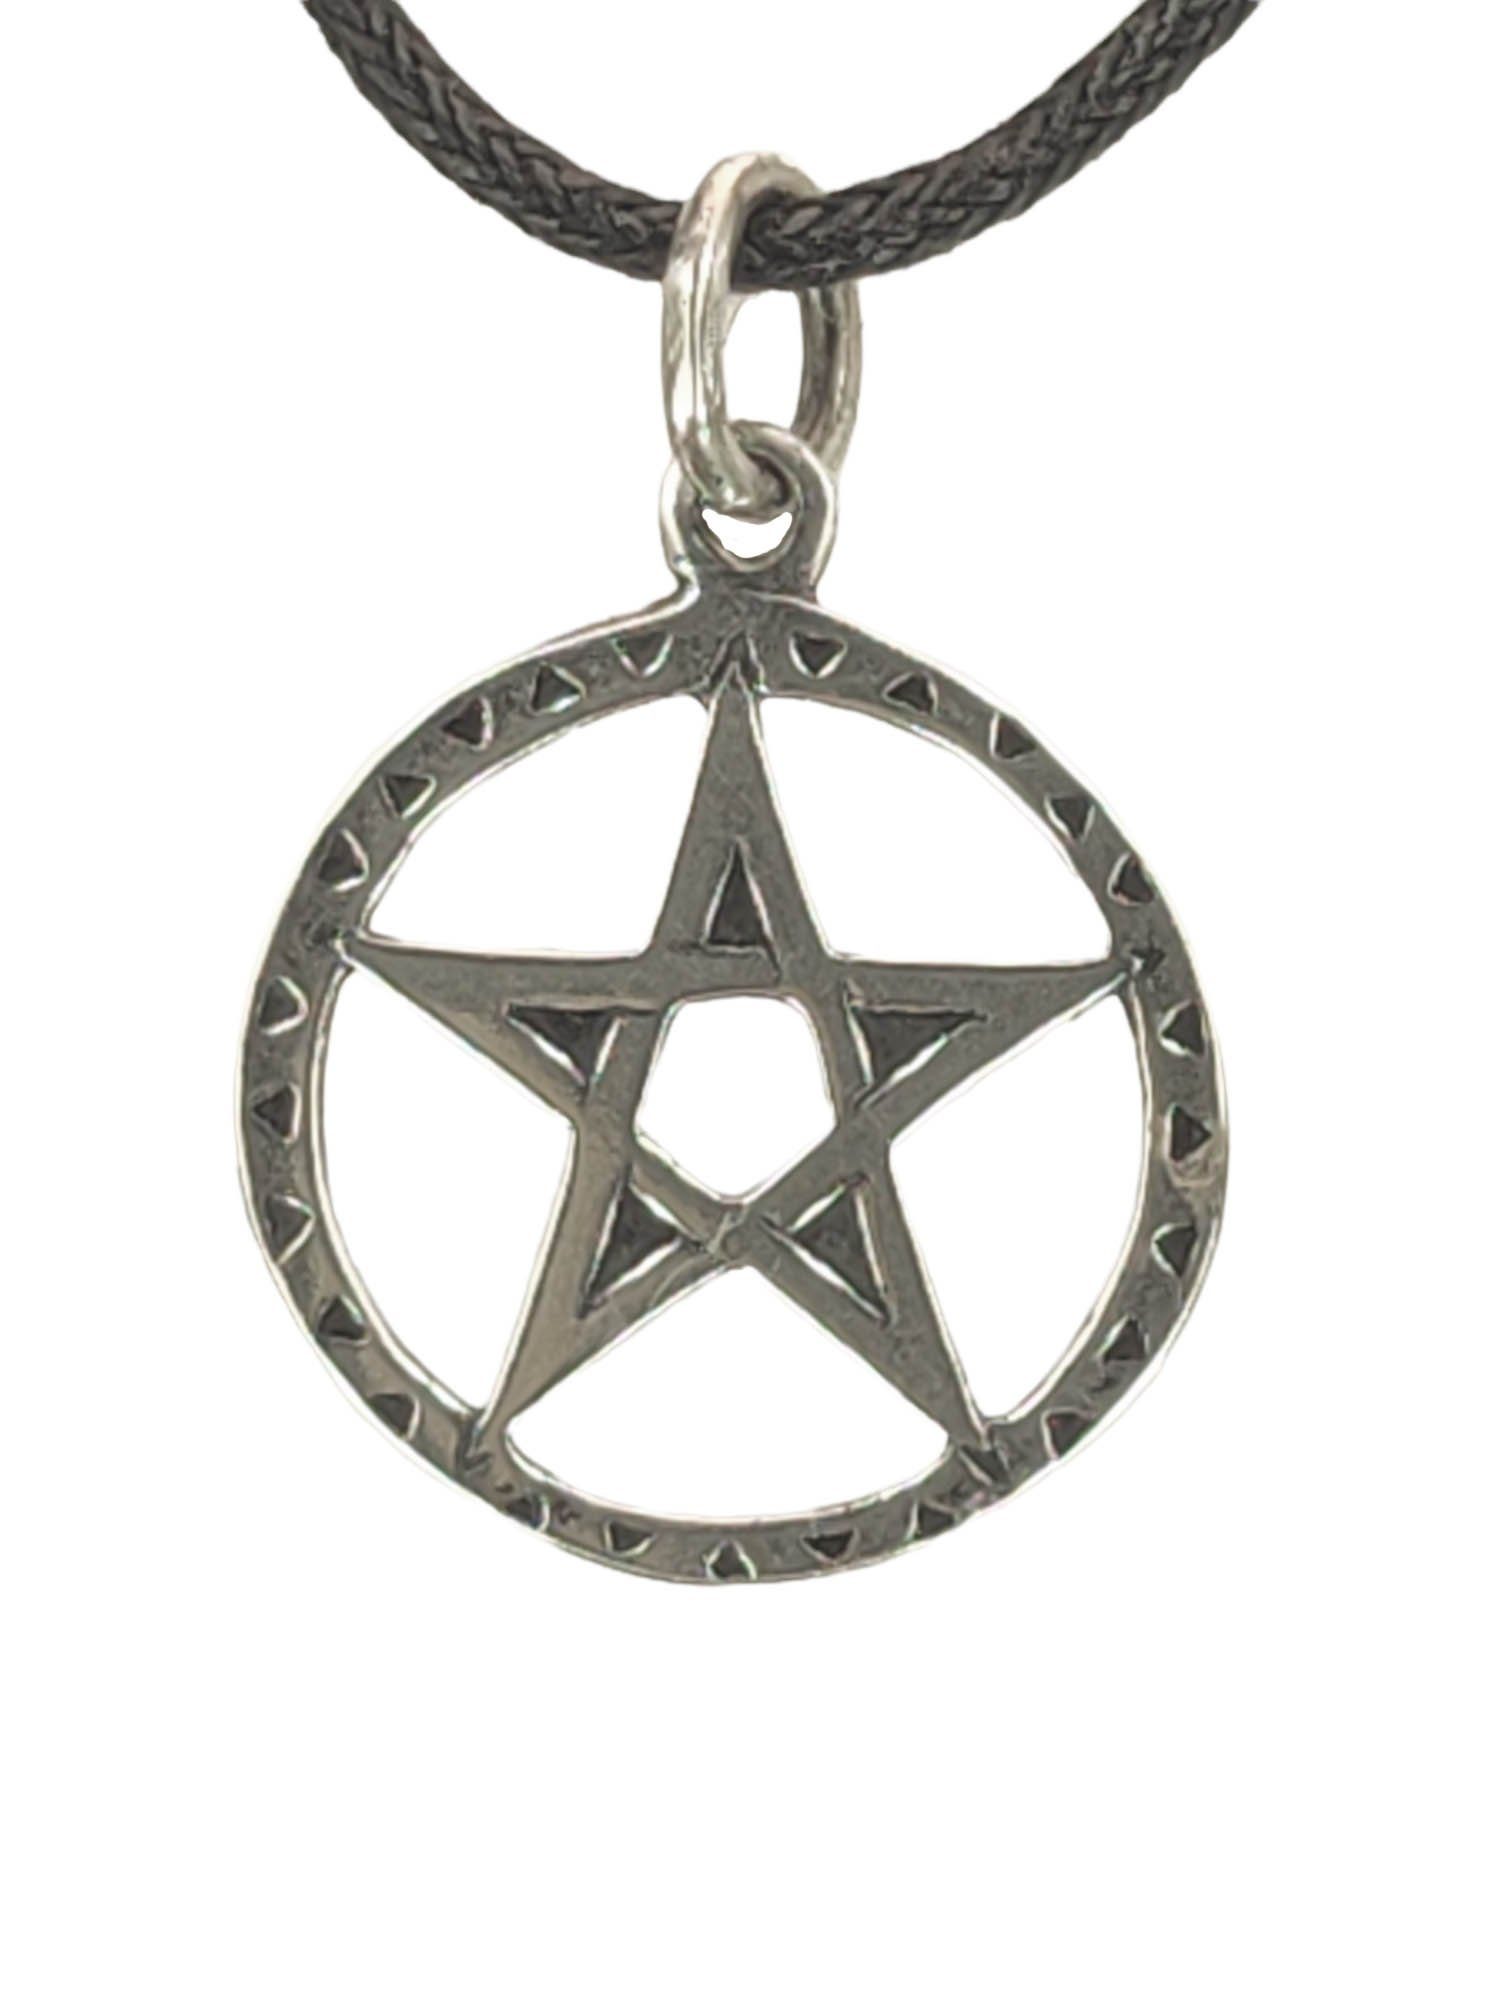 Amulett Schutz Silber of Kettenanhänger Anhänger Magie 925 Zauberei Kiss Pentagramm Leather